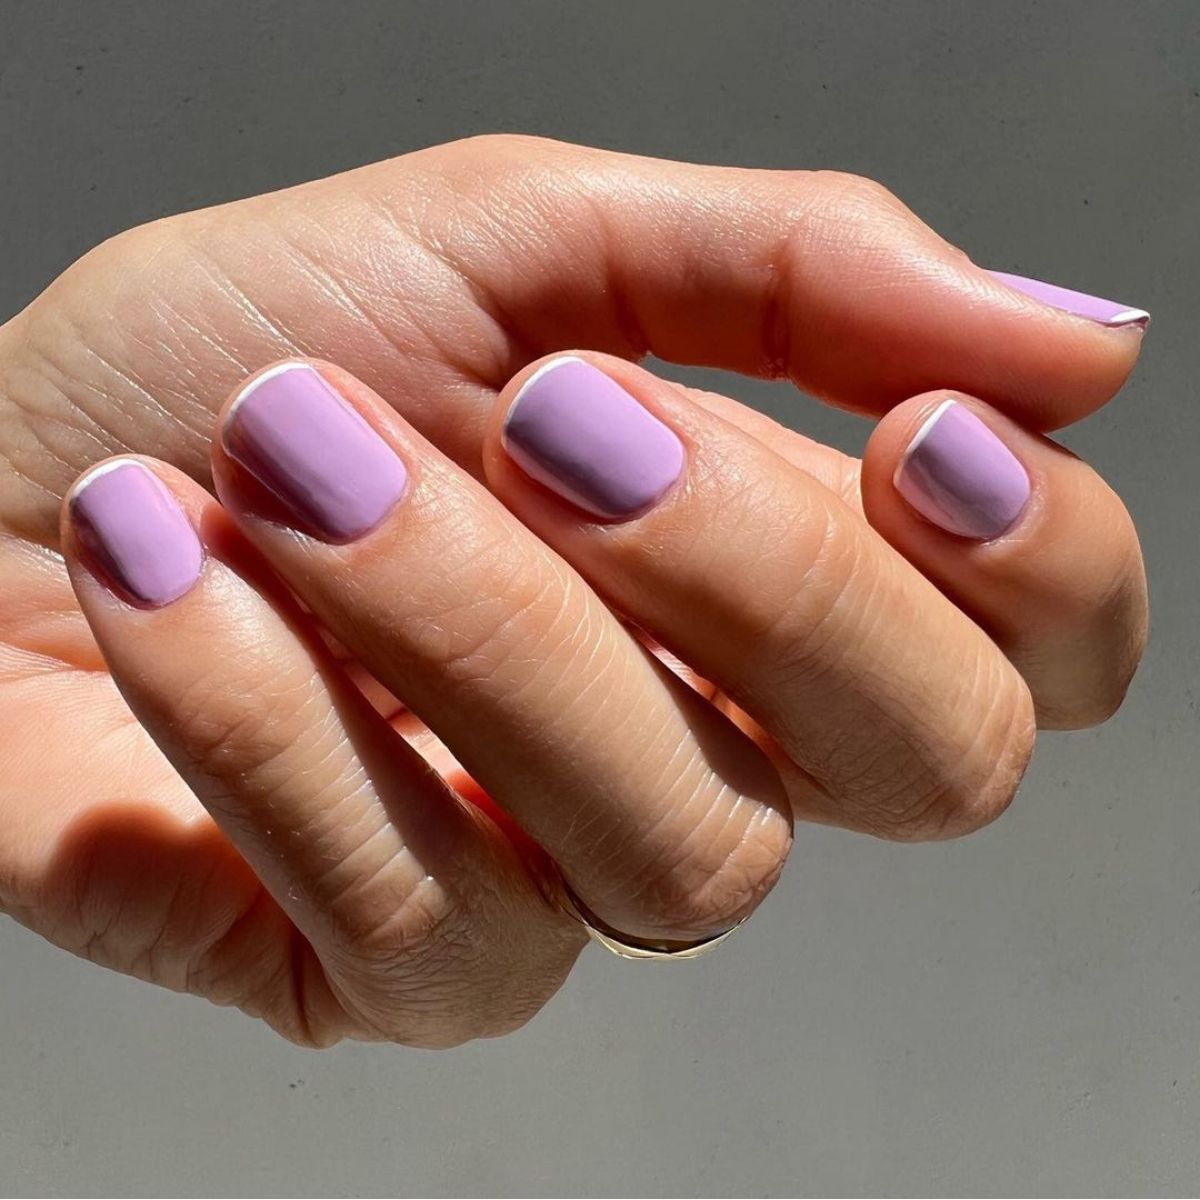 Purple Lilac Color Nails // Non Toxic Nail Polish // C√¥te‚Ñ¢ – côte